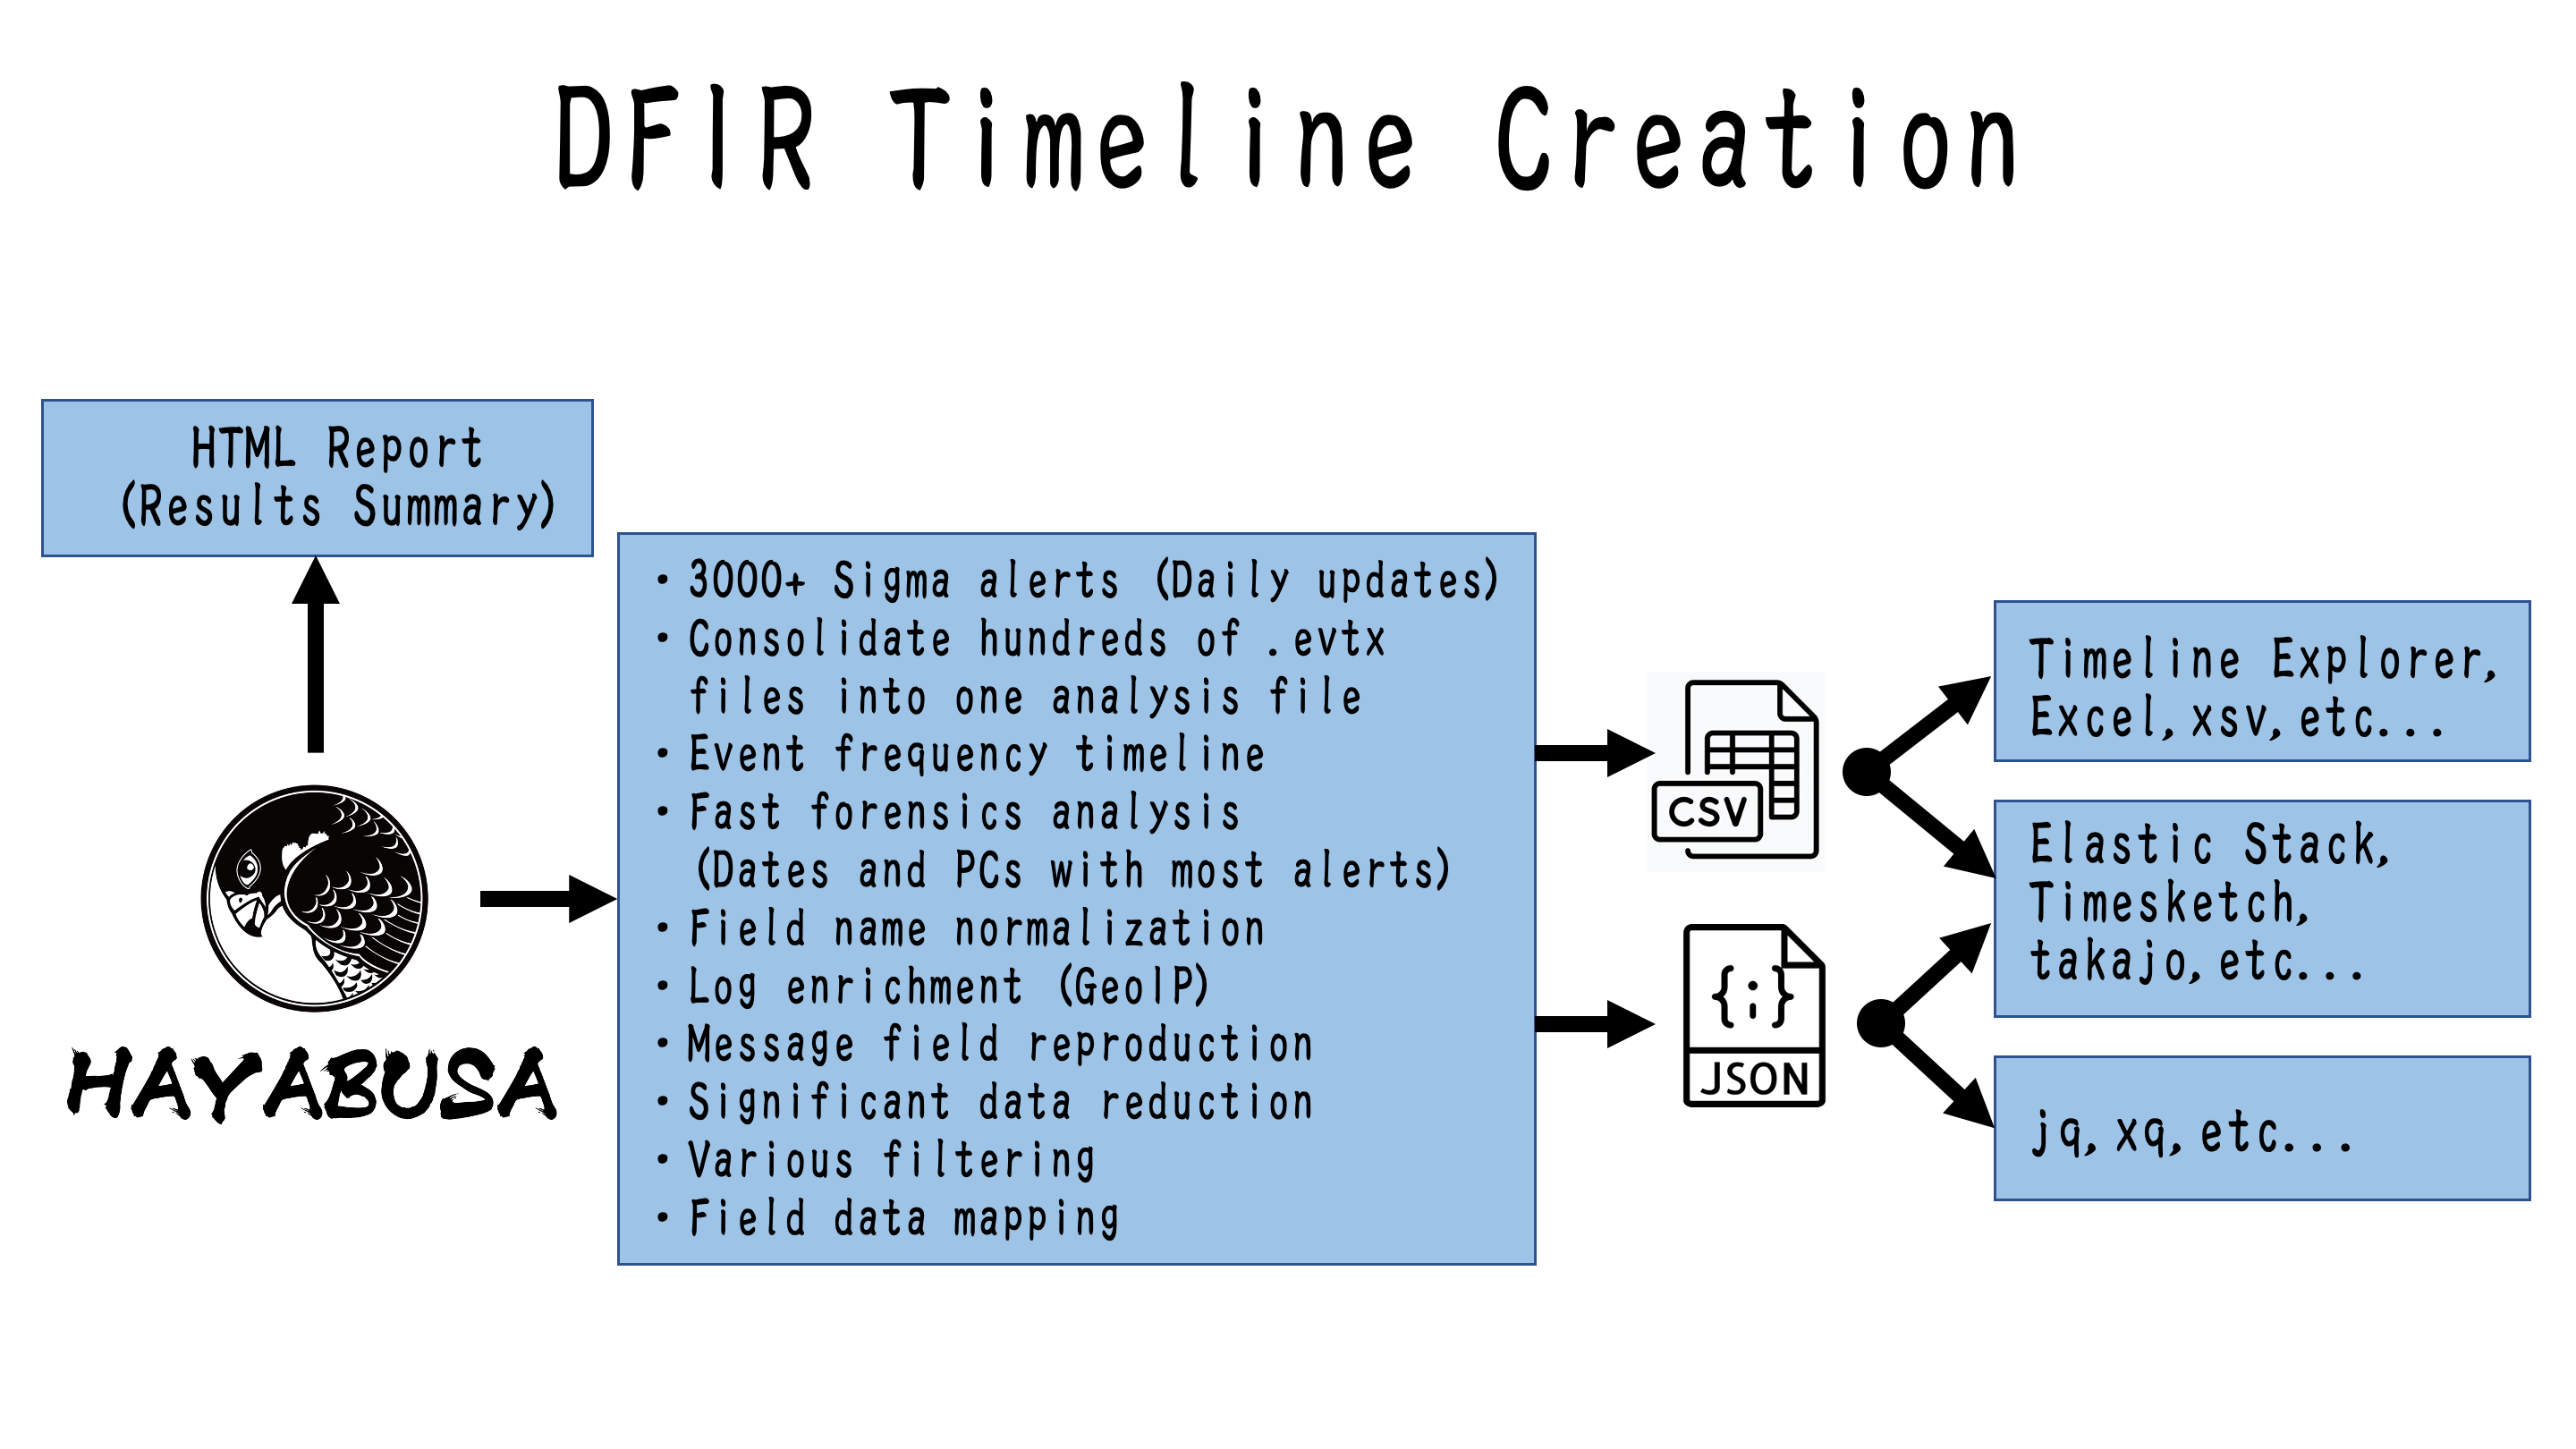 DFIR Timeline